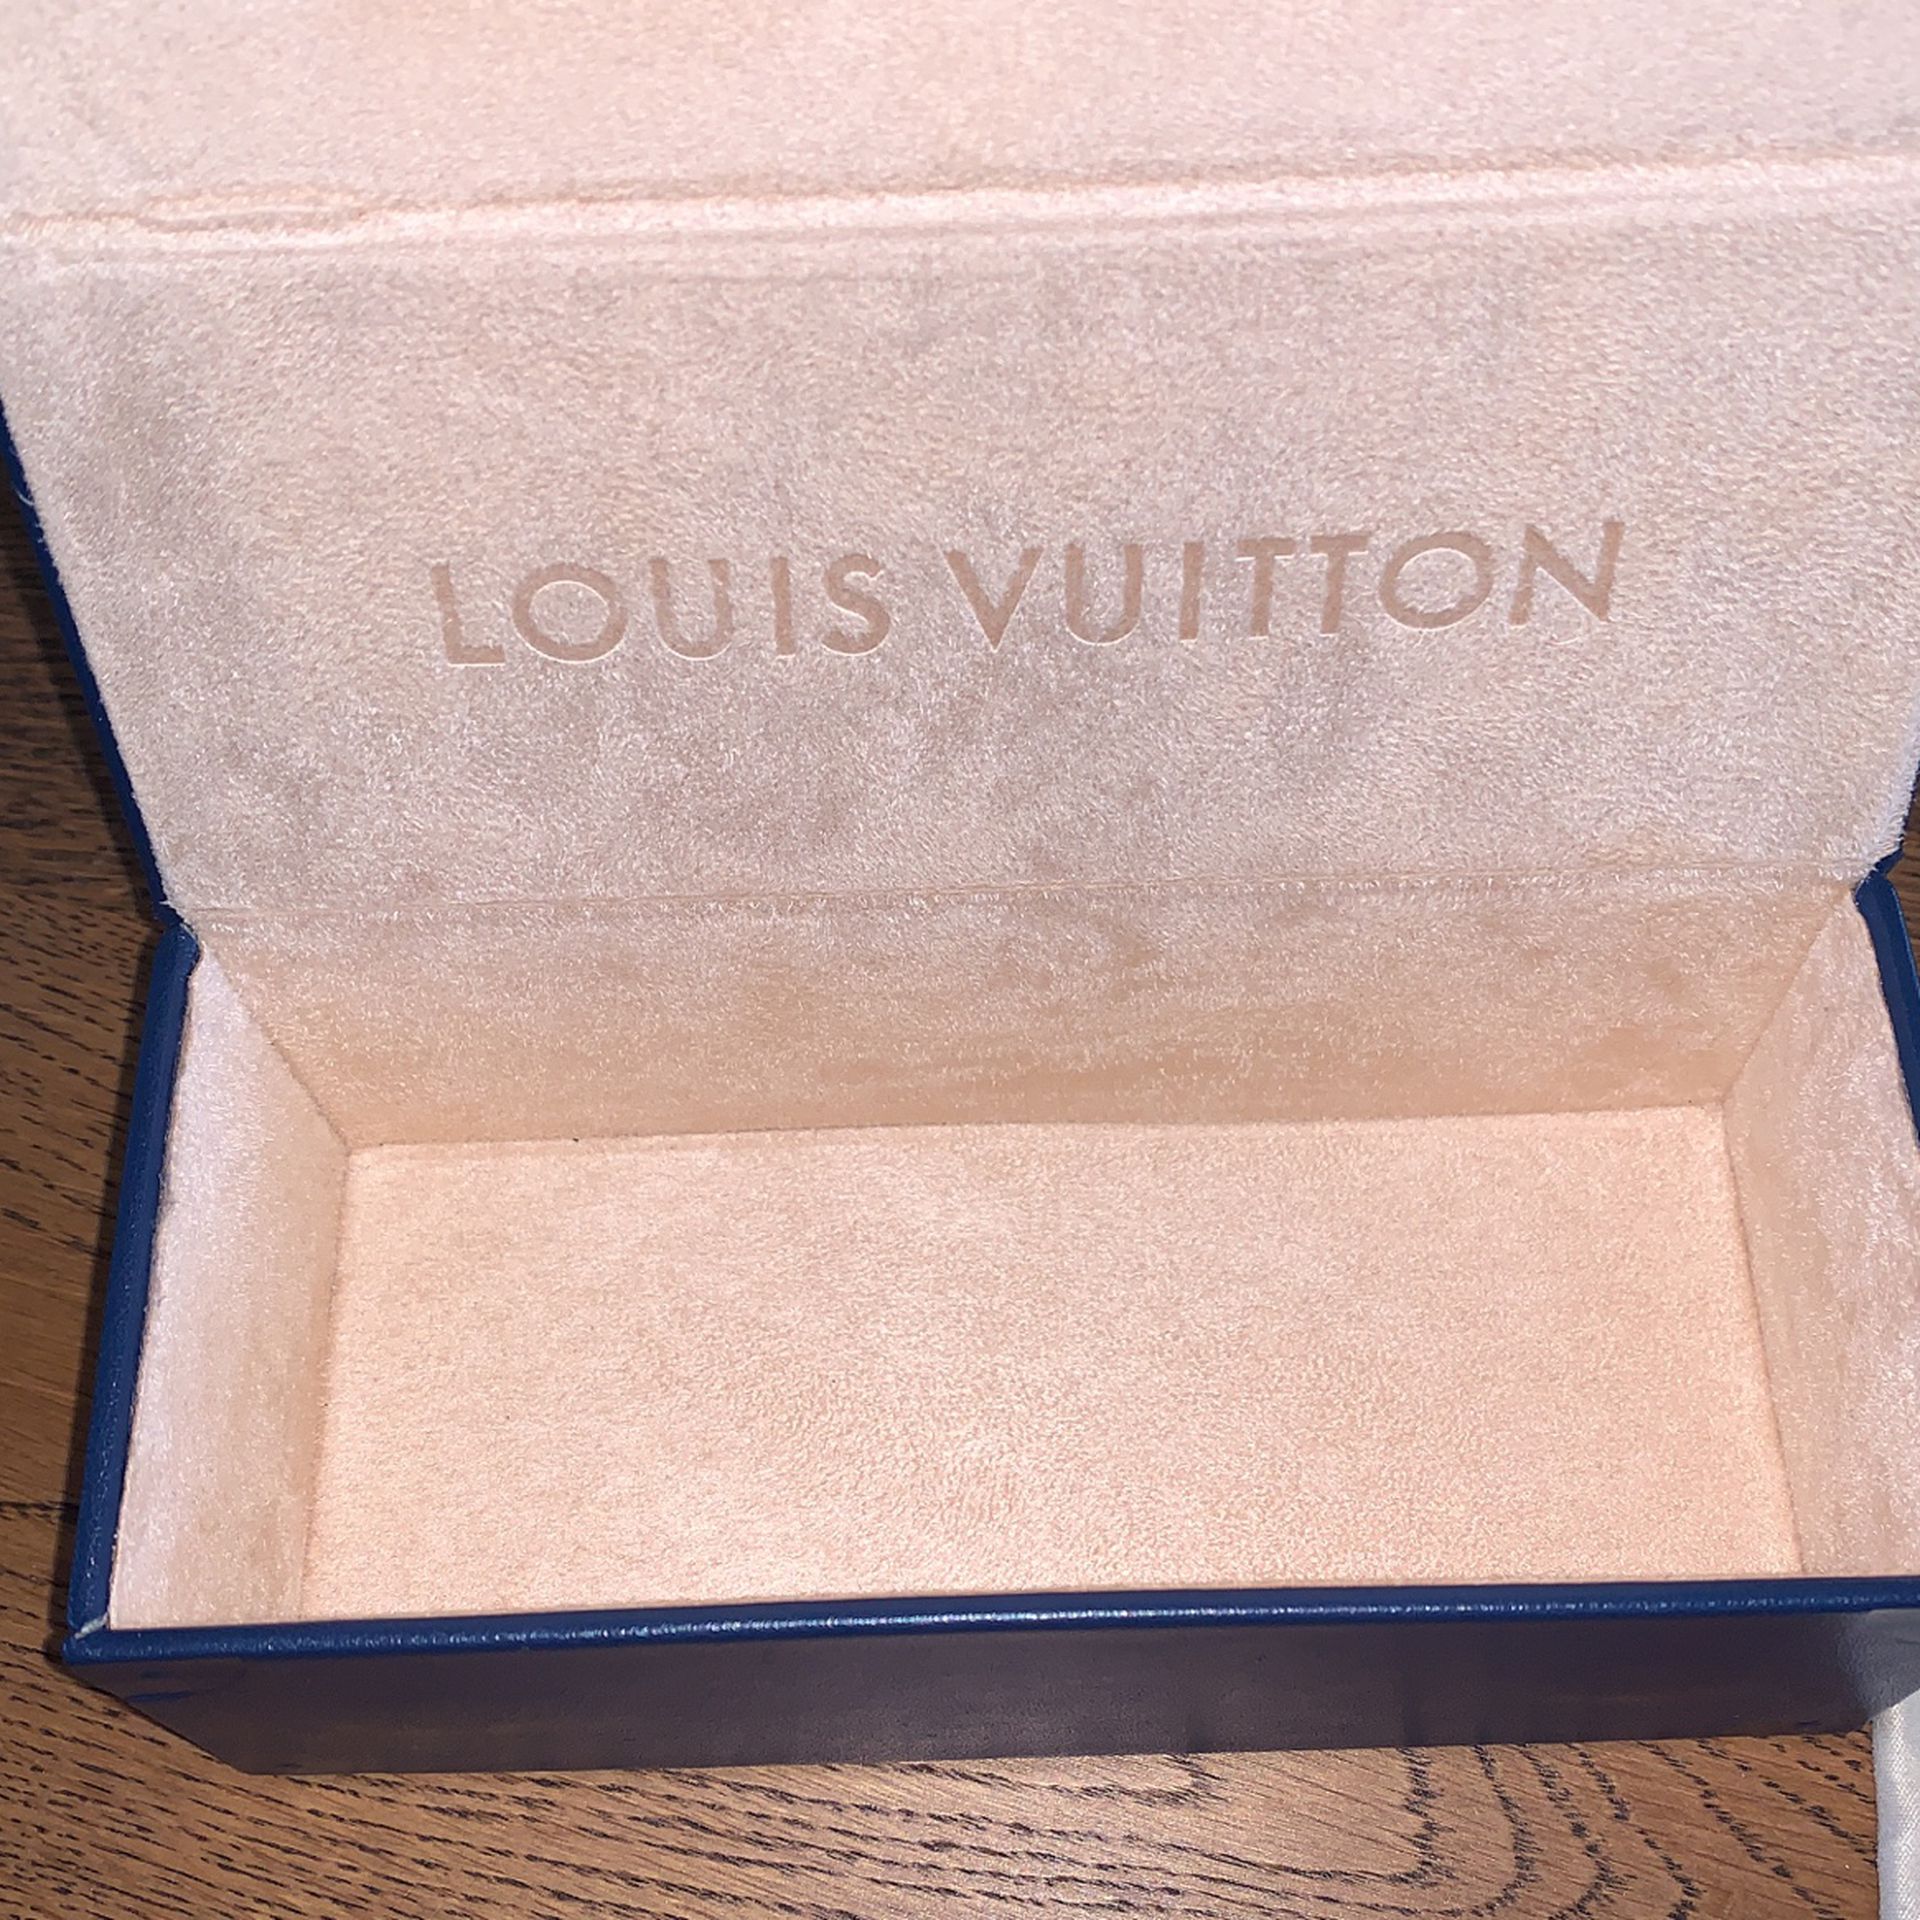 Louis Vuitton, Accessories, Lv La Grande Bellezza Sunglasses